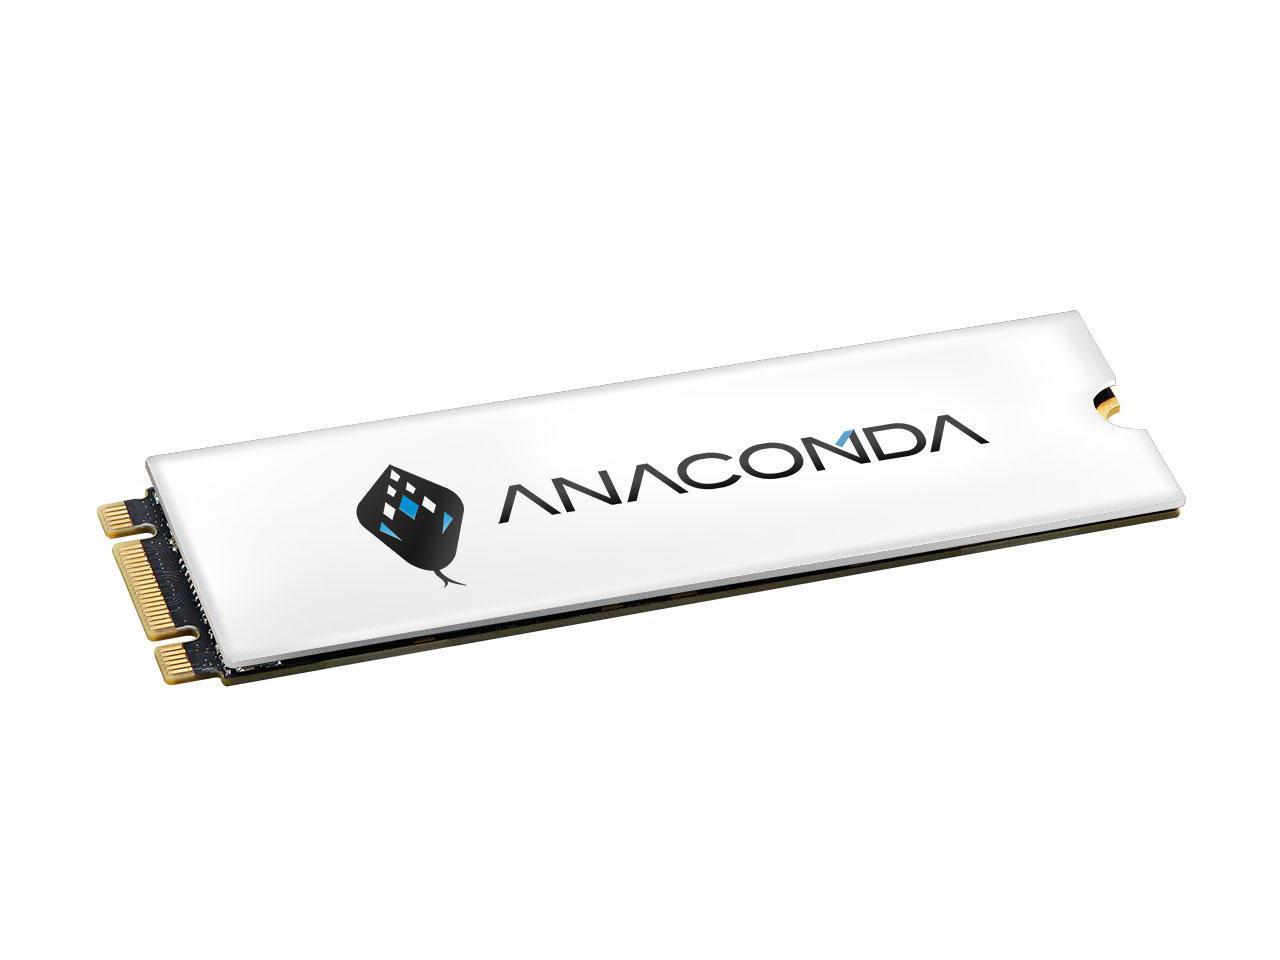 【復活大激減】ANACOMDA i3 256/512/1TB/2TB 3D TLC M.2 NVMe PCIe 3.0 x4 SSD